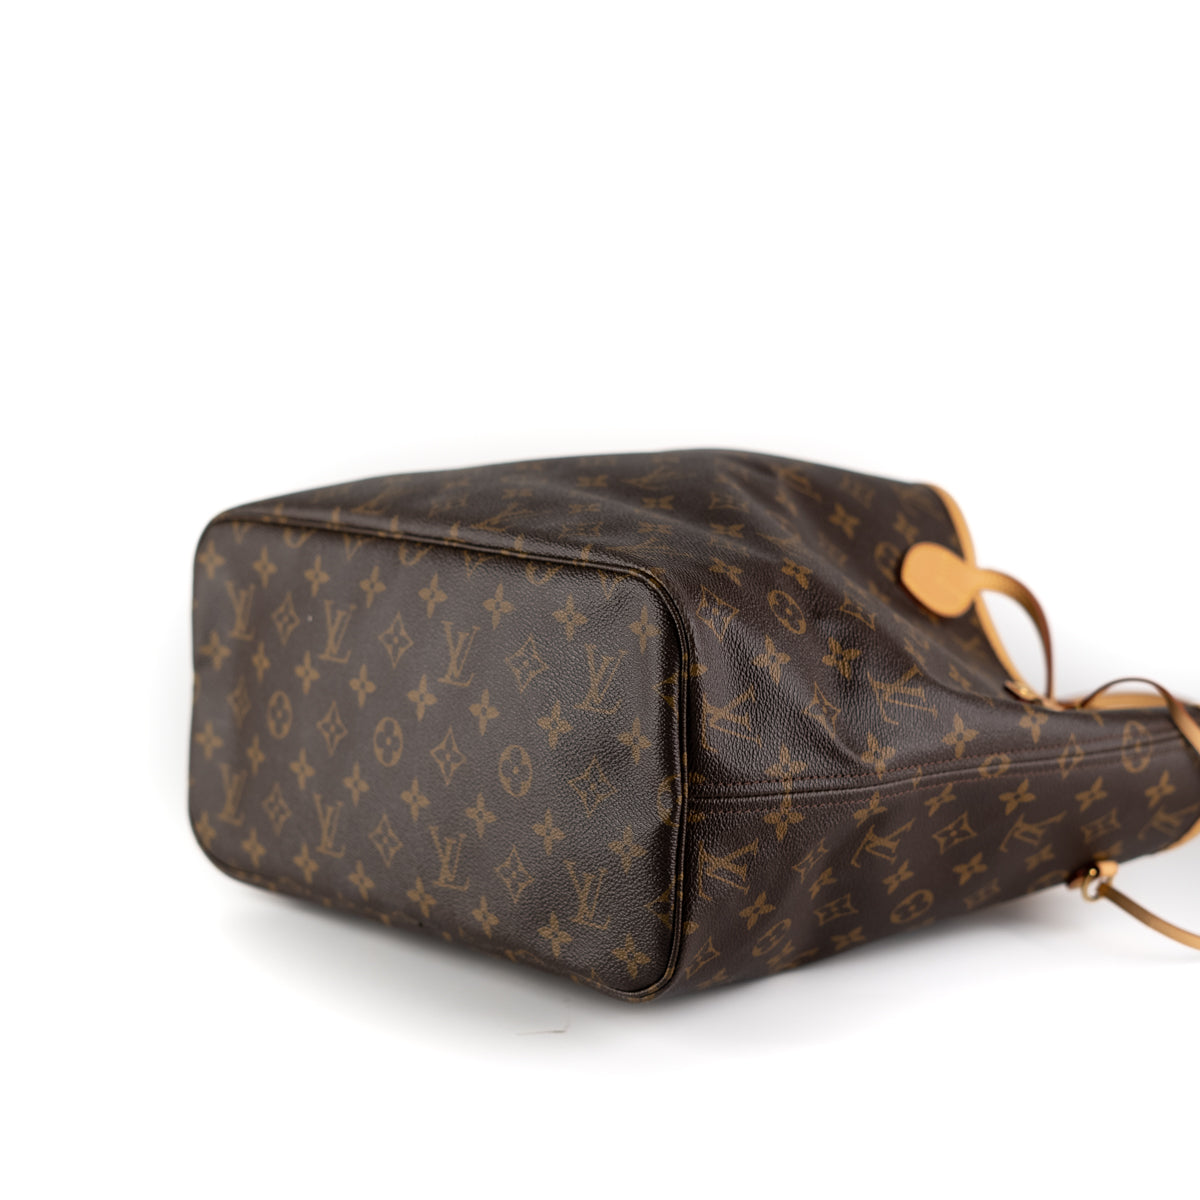 Louis Vuitton Neverfull Handbag 322147